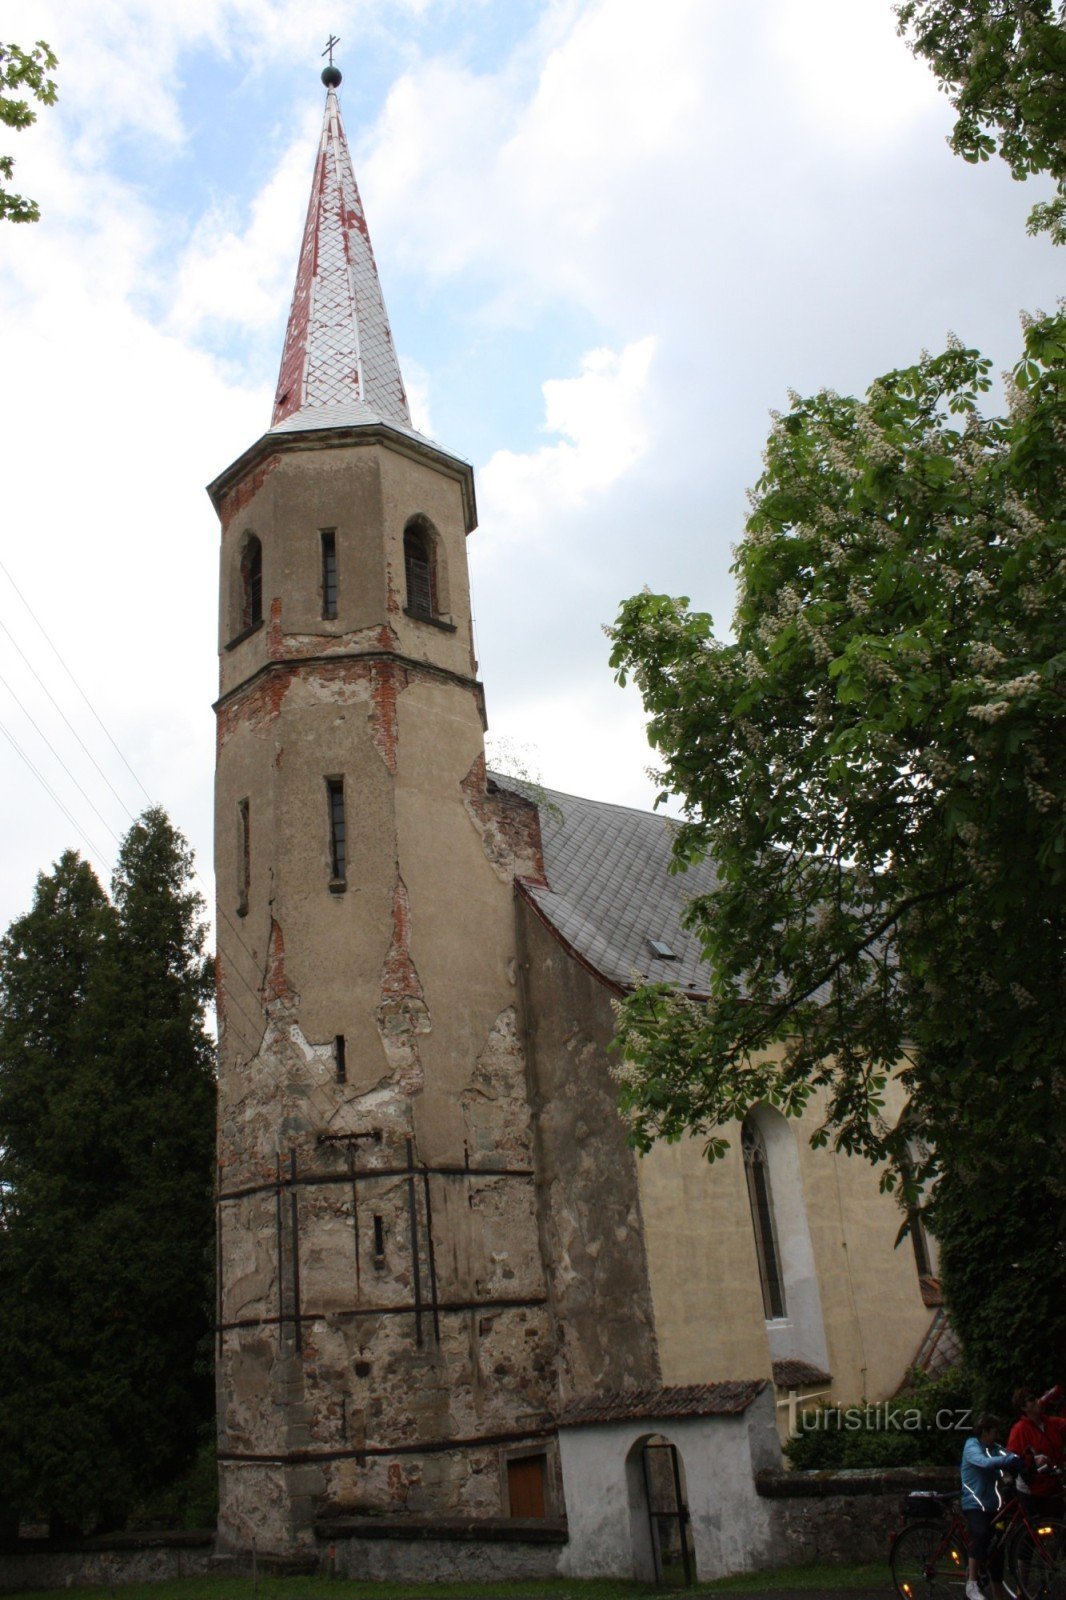 Две достопримечательности поселка Прачов - церковь и водонапорная башня.